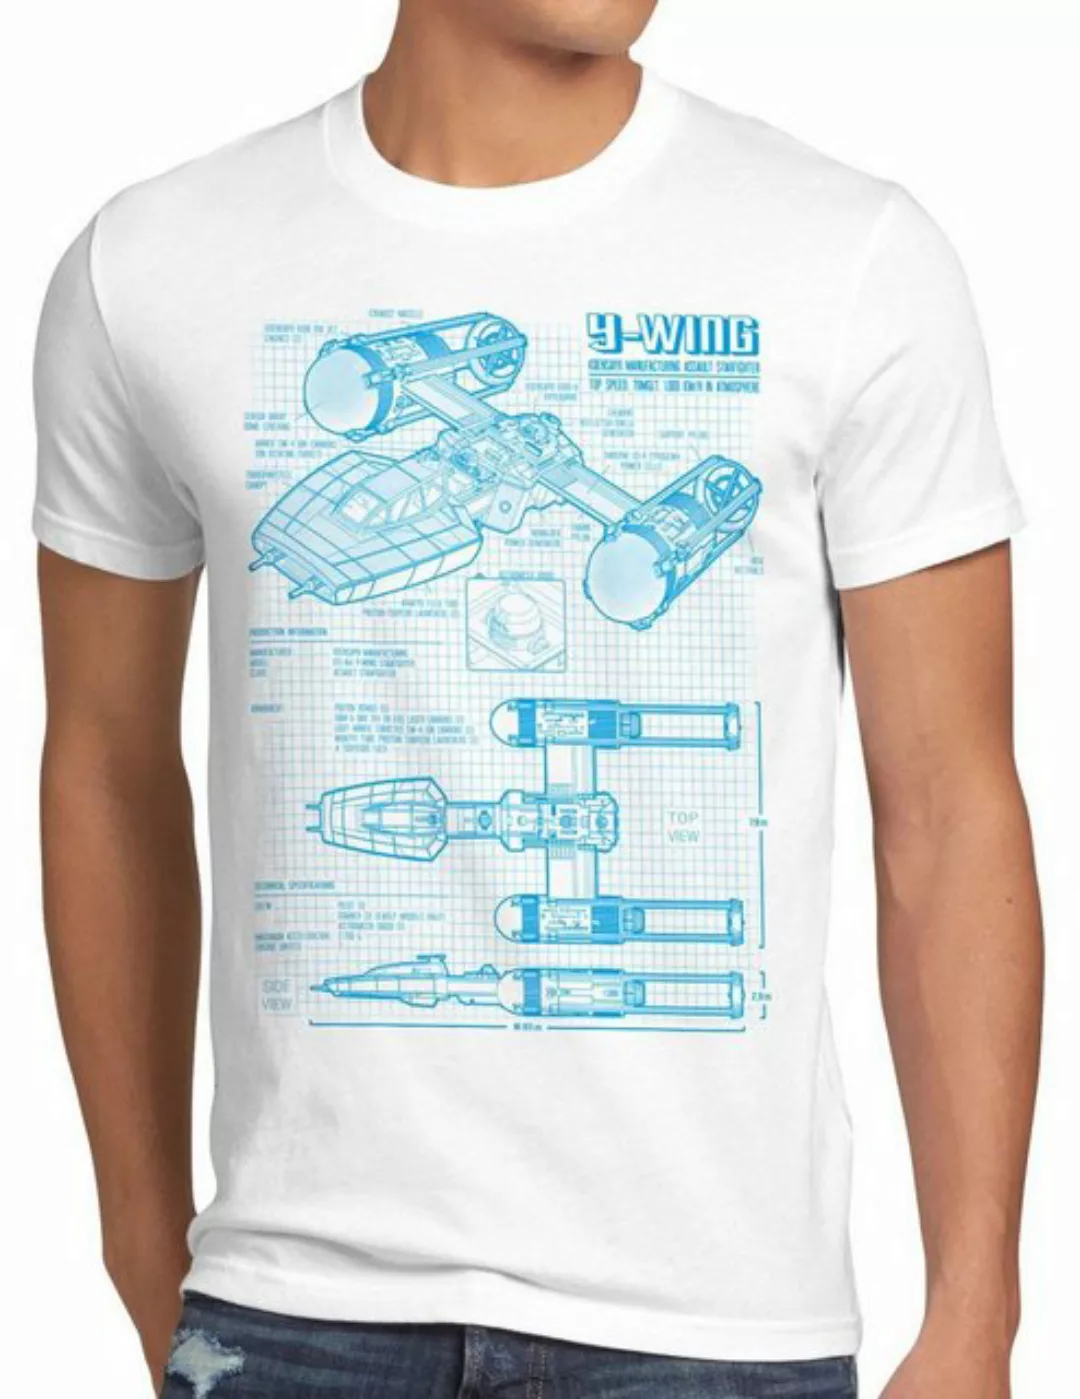 style3 Print-Shirt Herren T-Shirt Y-Wing rebellion star krieg sterne der wa günstig online kaufen